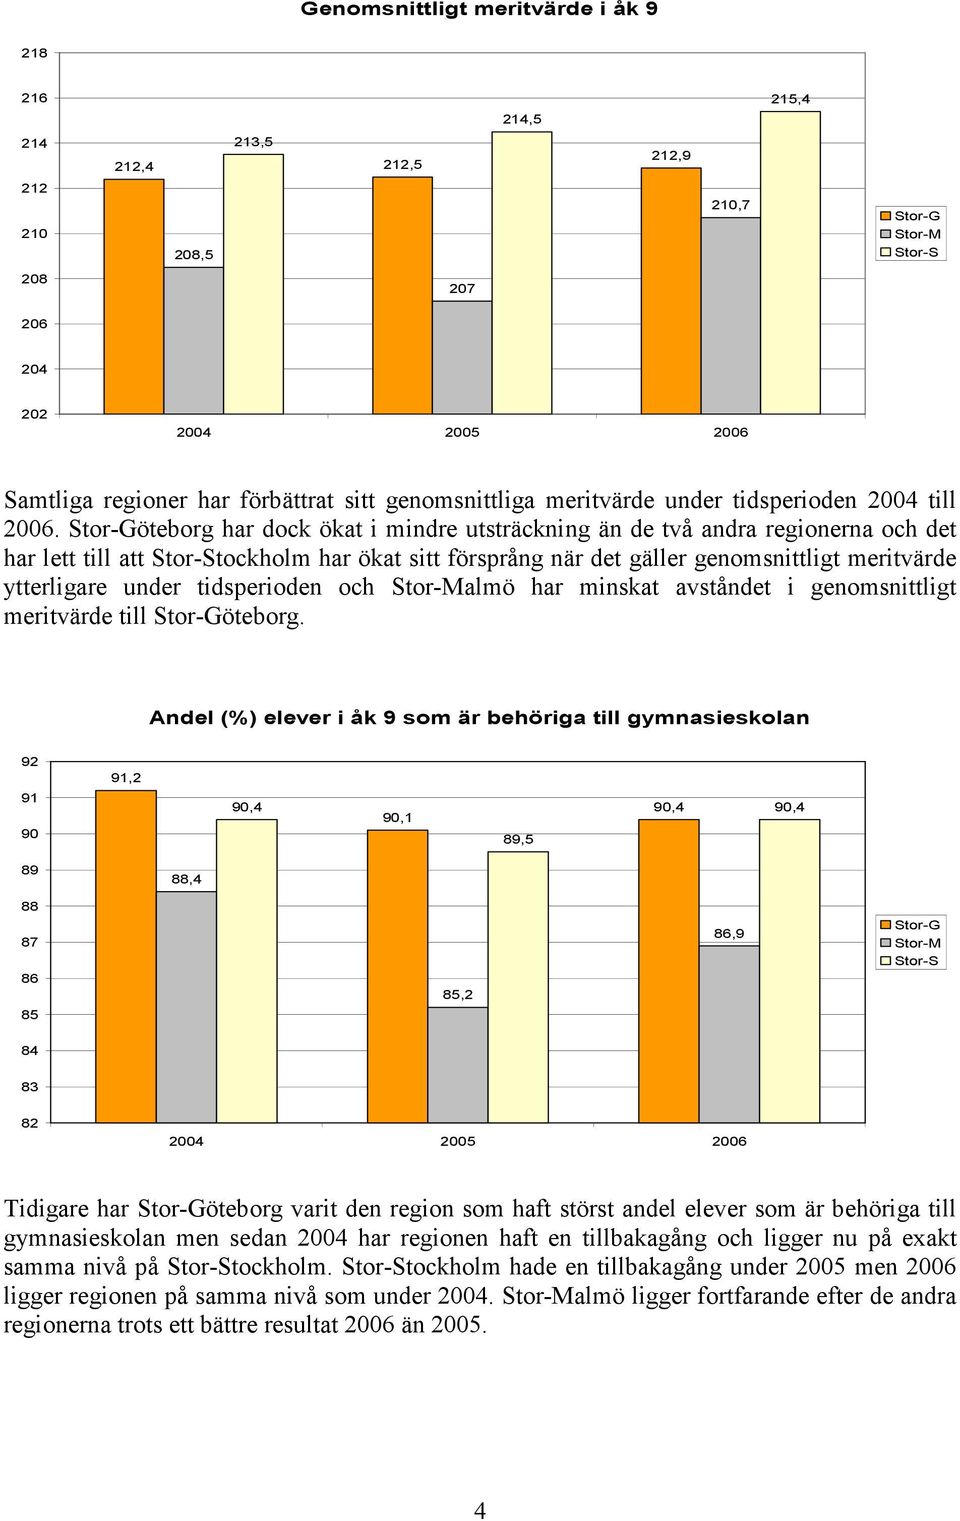 öteborg har dock ökat i mindre utsträckning än de två andra regionerna och det har lett till att tockholm har ökat sitt försprång när det gäller genomsnittligt meritvärde ytterligare under